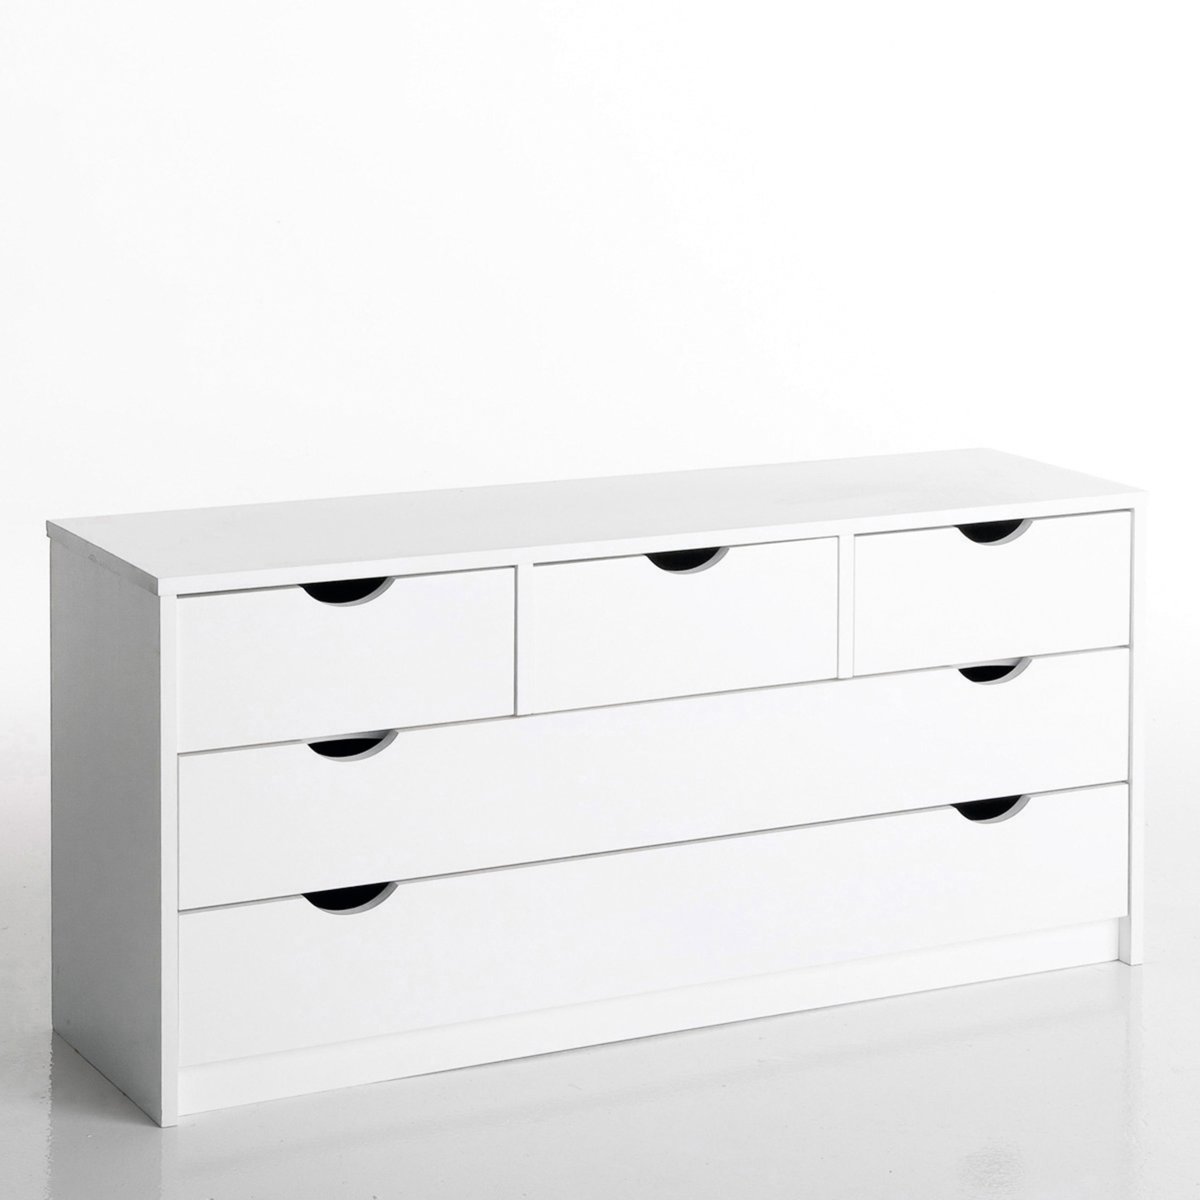 Image of Aspen Solid Pine 5-Drawer Dresser